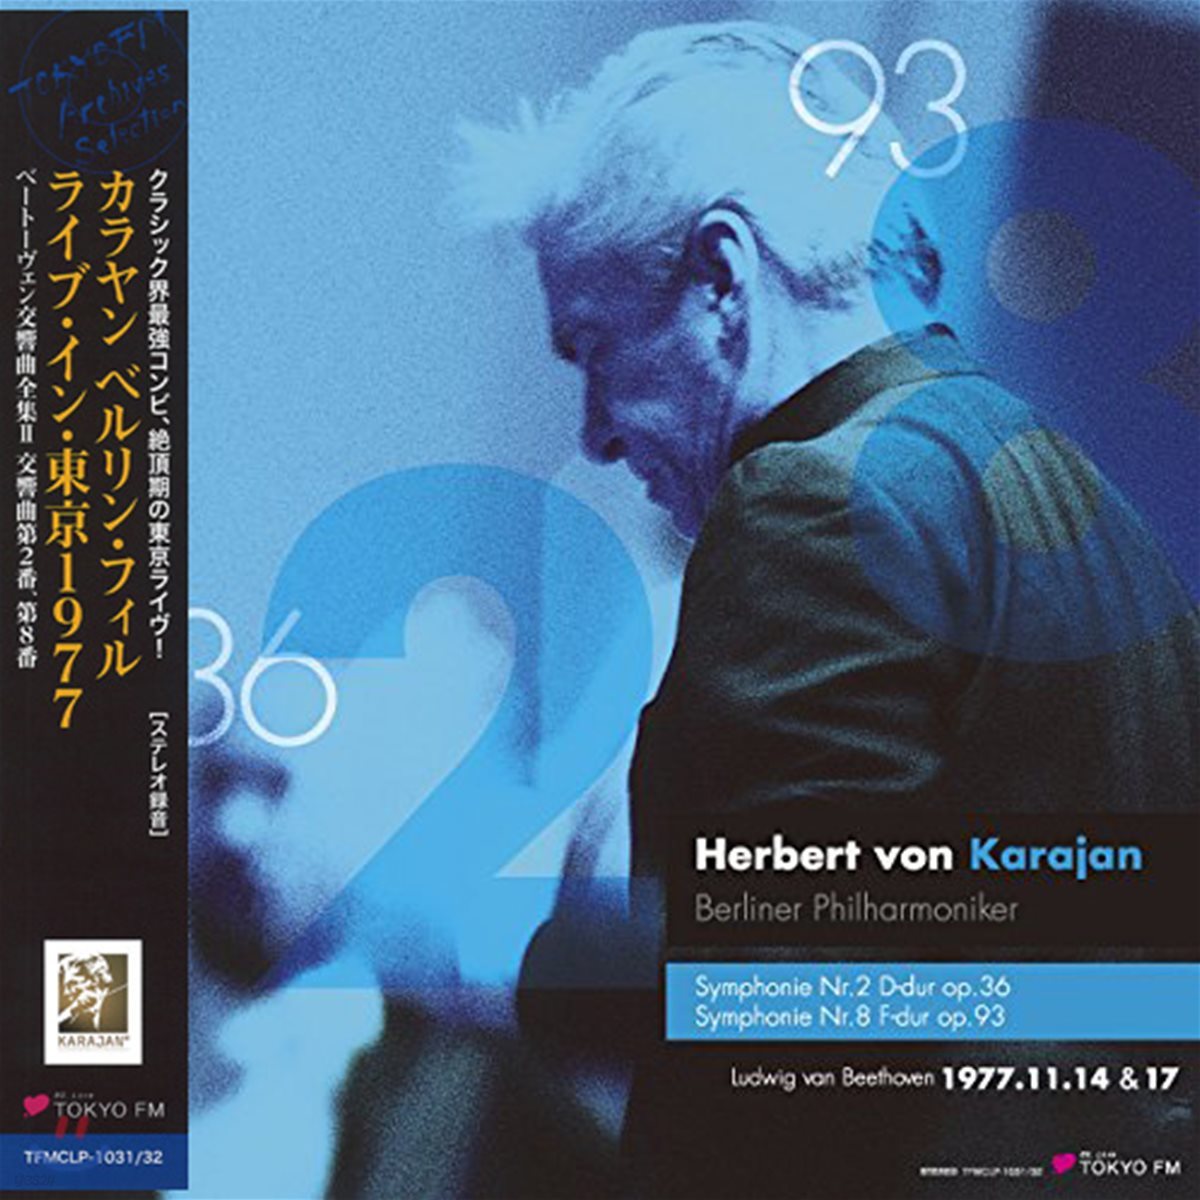 Herbert von Karajan 베토벤: 교향곡 2번, 8번 (Beethoven: Symphonies Op.36, Op.93) [2LP]